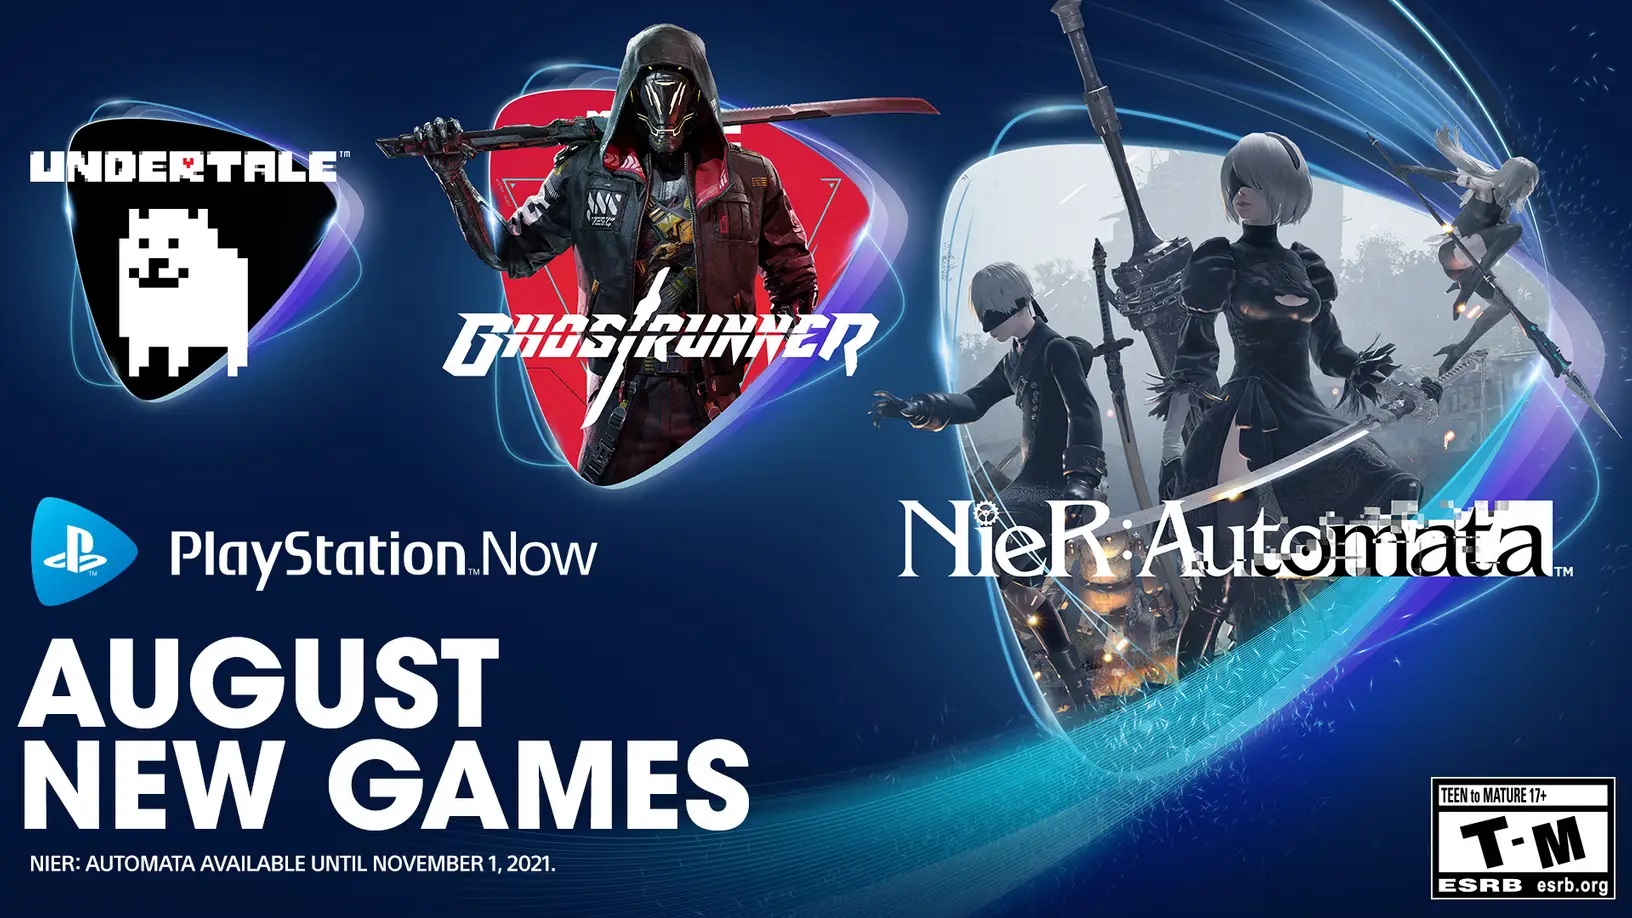 PlayStation voegt nu NieR: Automata toe